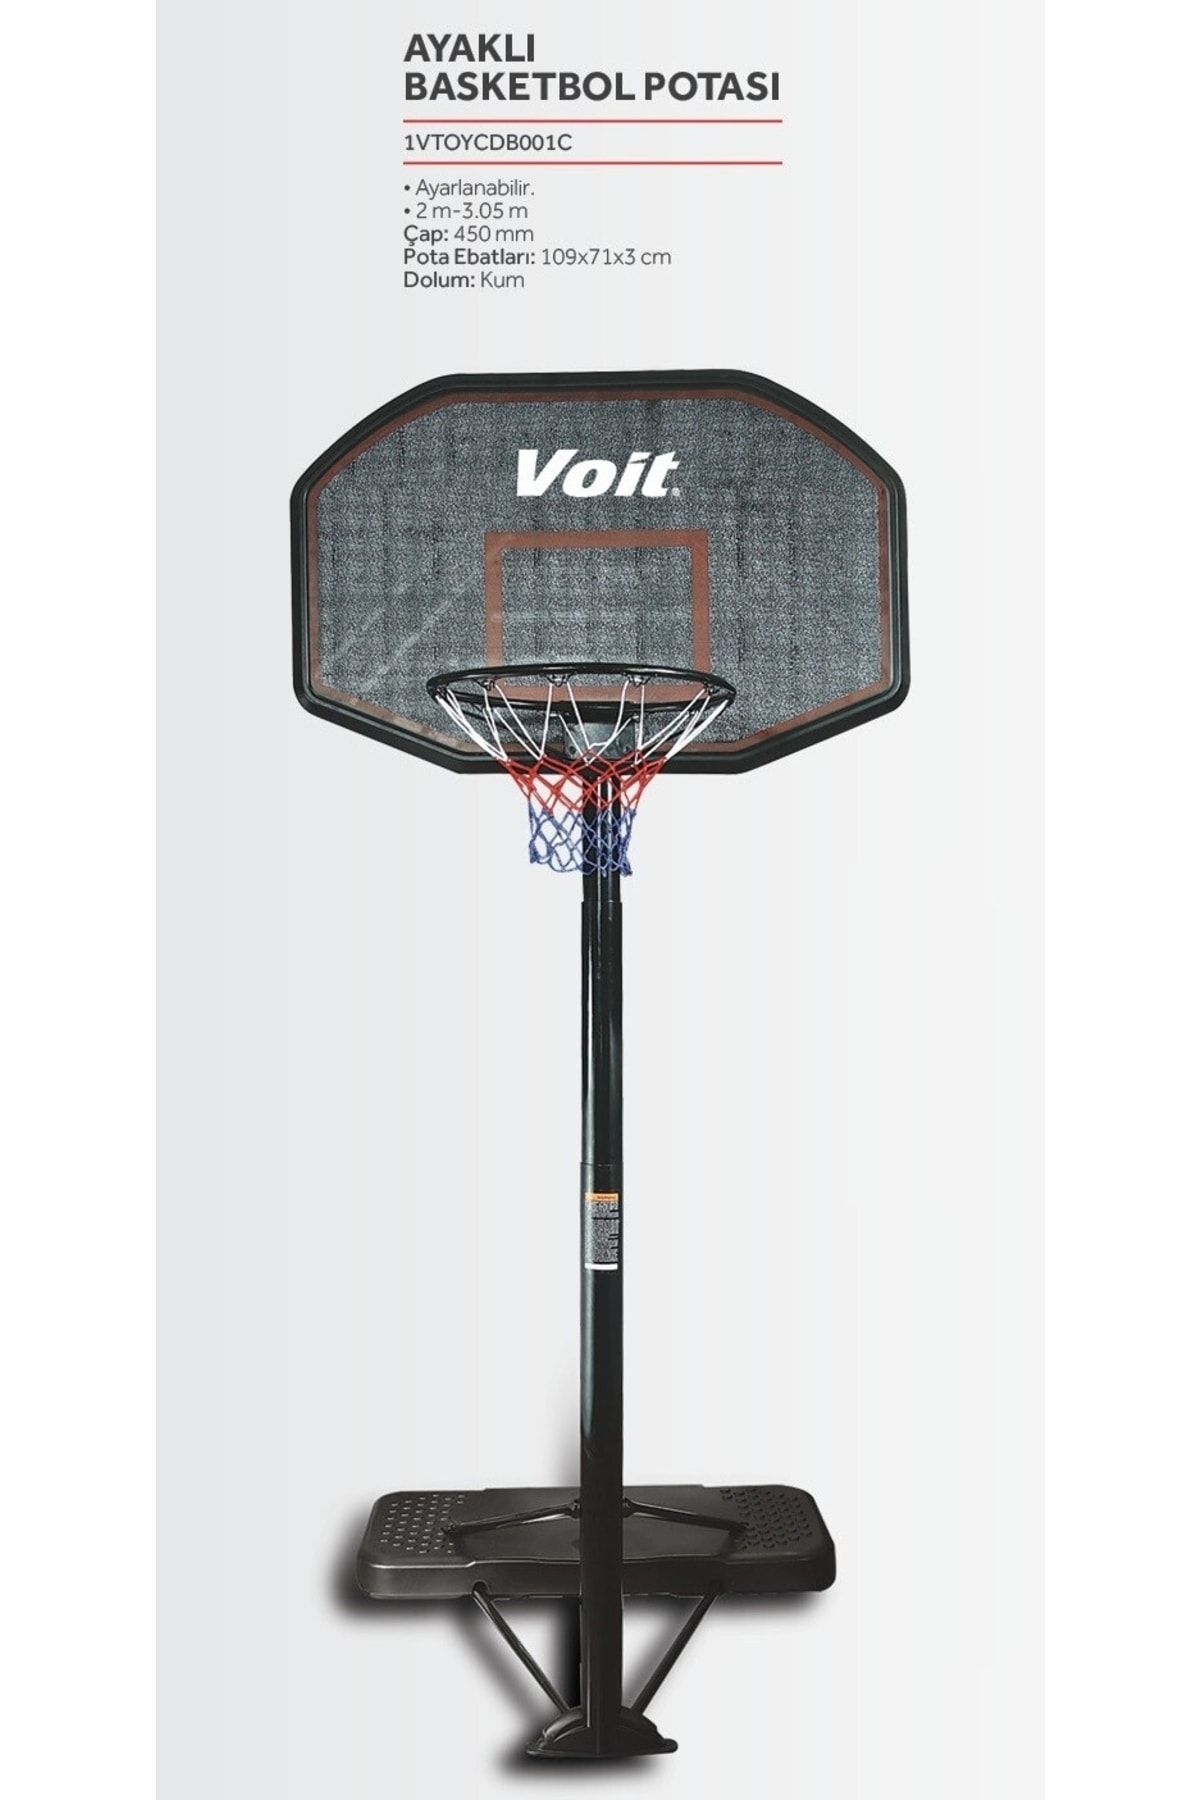 Voit Cdb001c Ayaklı Basketbol Potası ( 3,05mt)